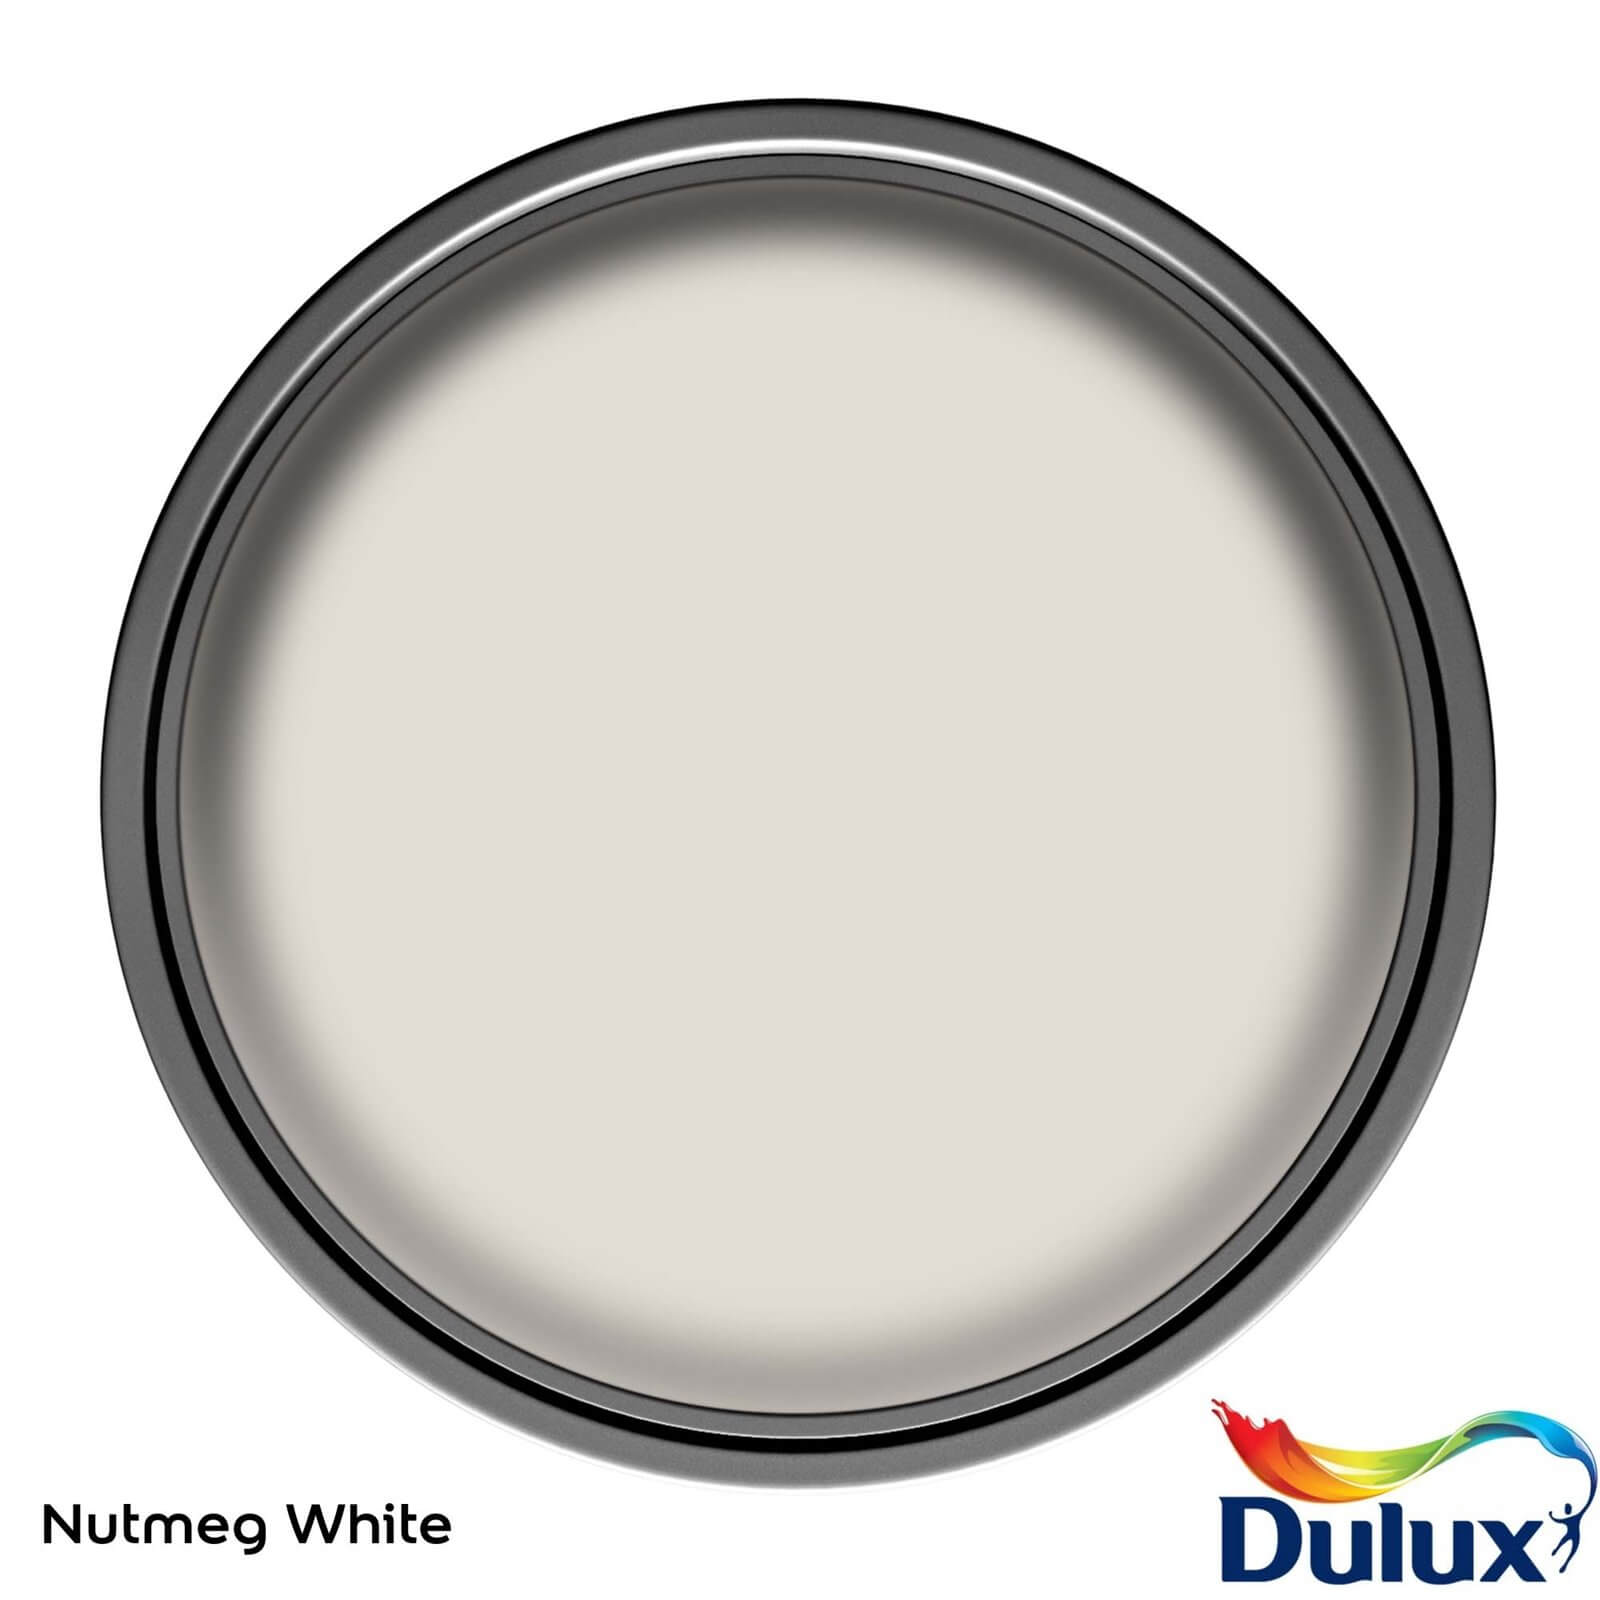 Dulux Natural Hints Silk Emulsion Paint Nutmeg White - 2.5L